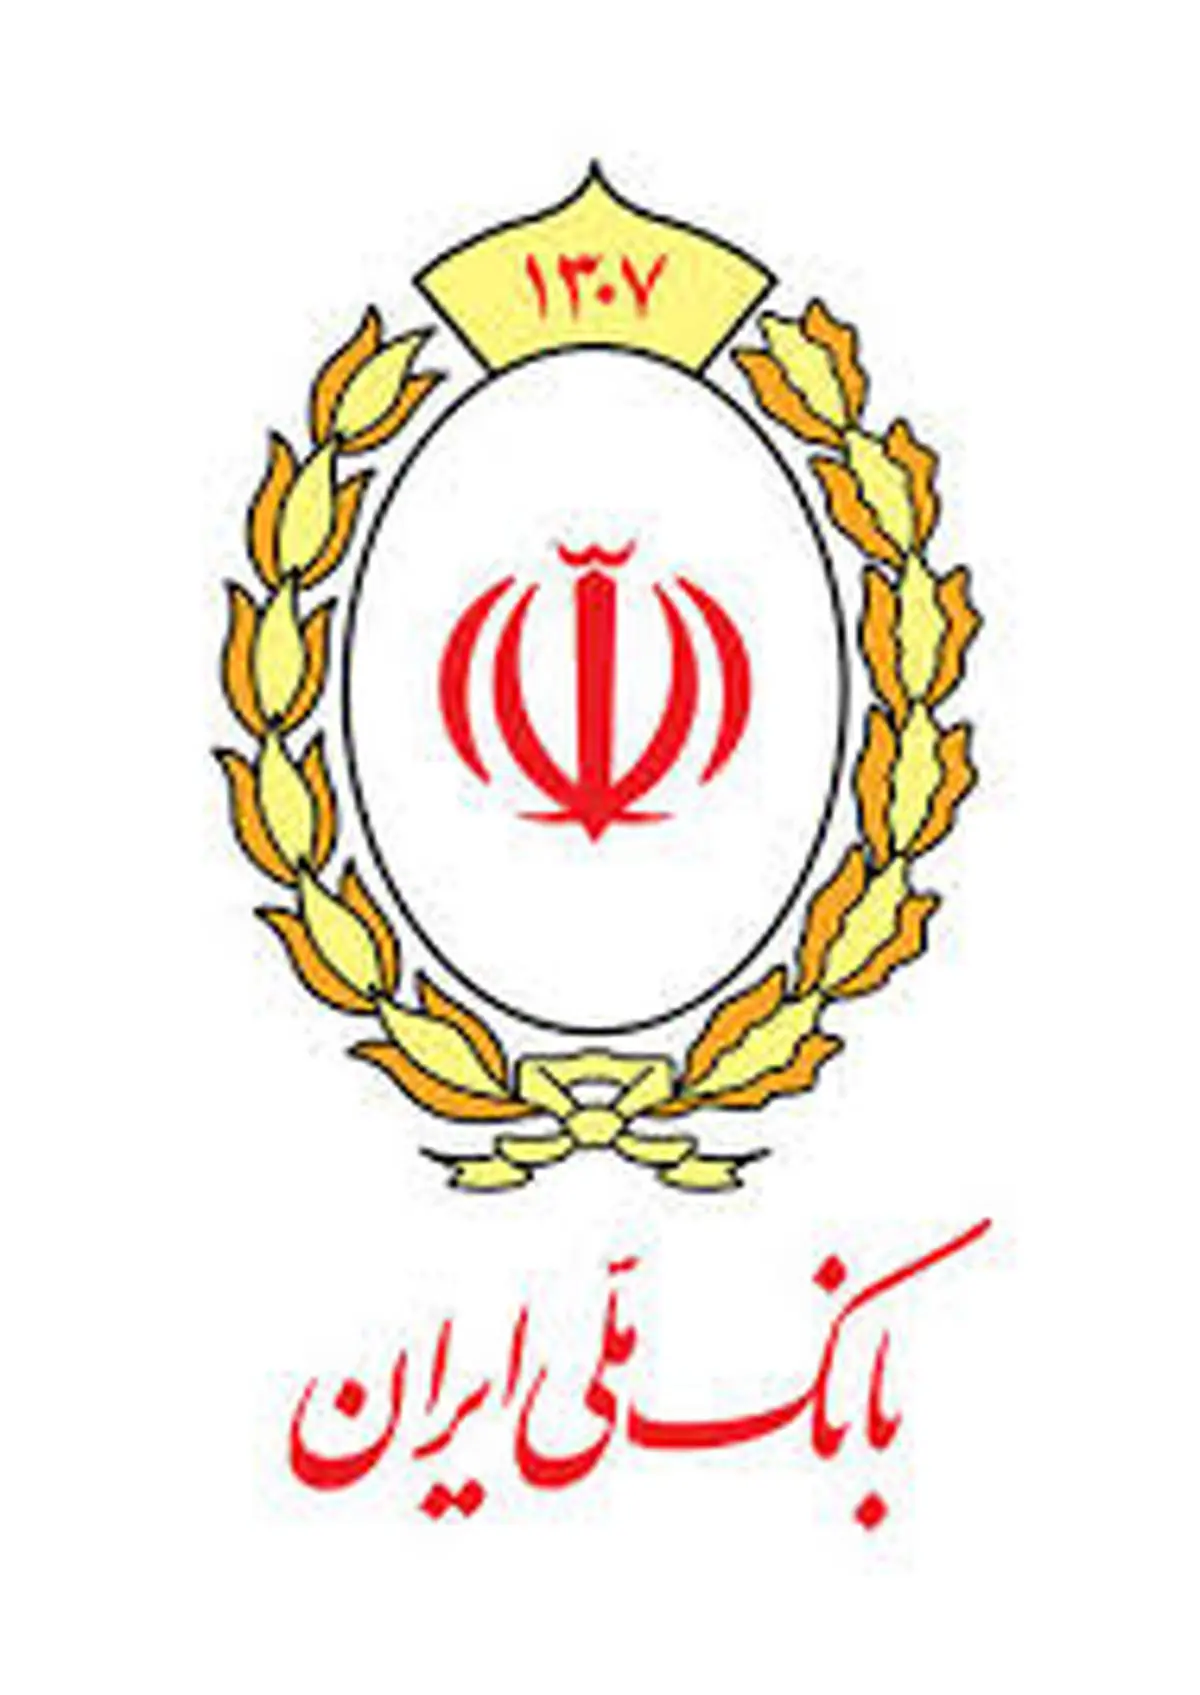 واگذاری بیش از 17 هزار میلیارد ریال از اموال و سهام مازاد بانک ملی ایران در سال 98

